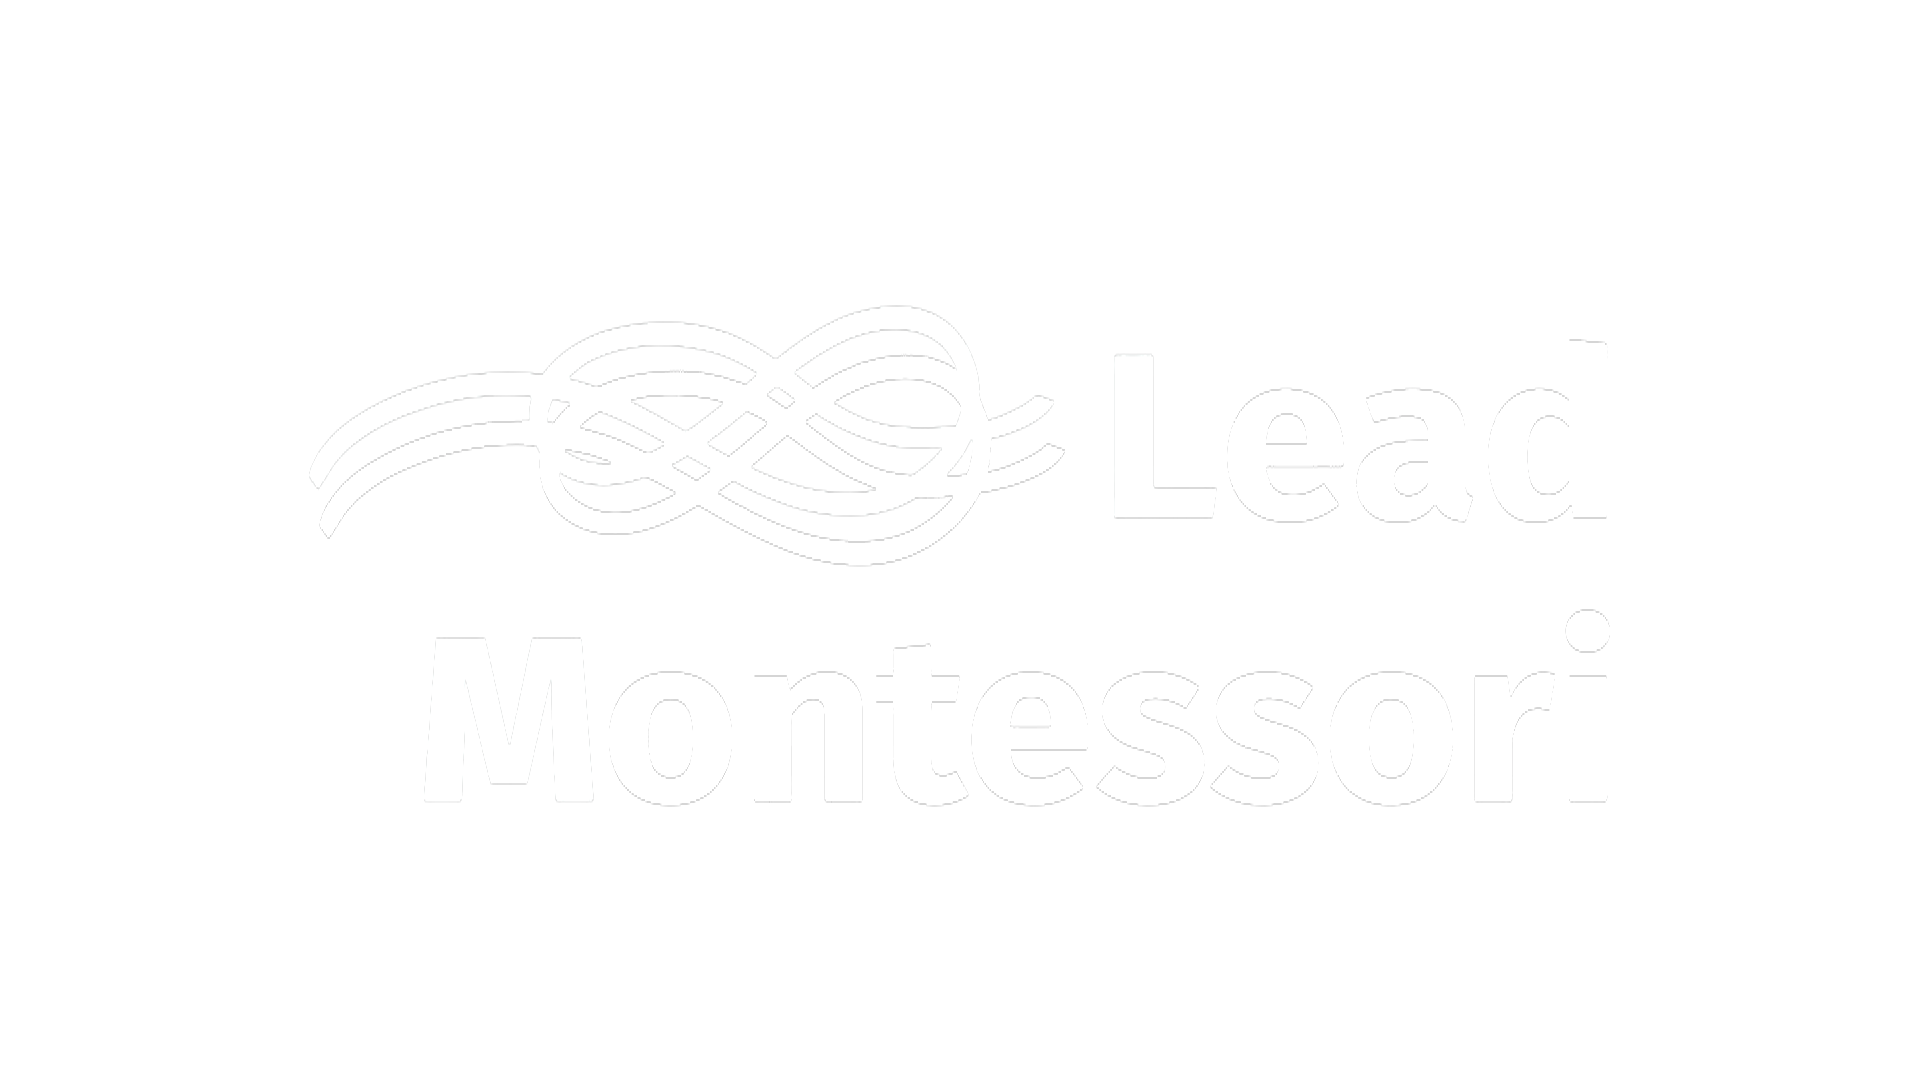 LeadMontessori